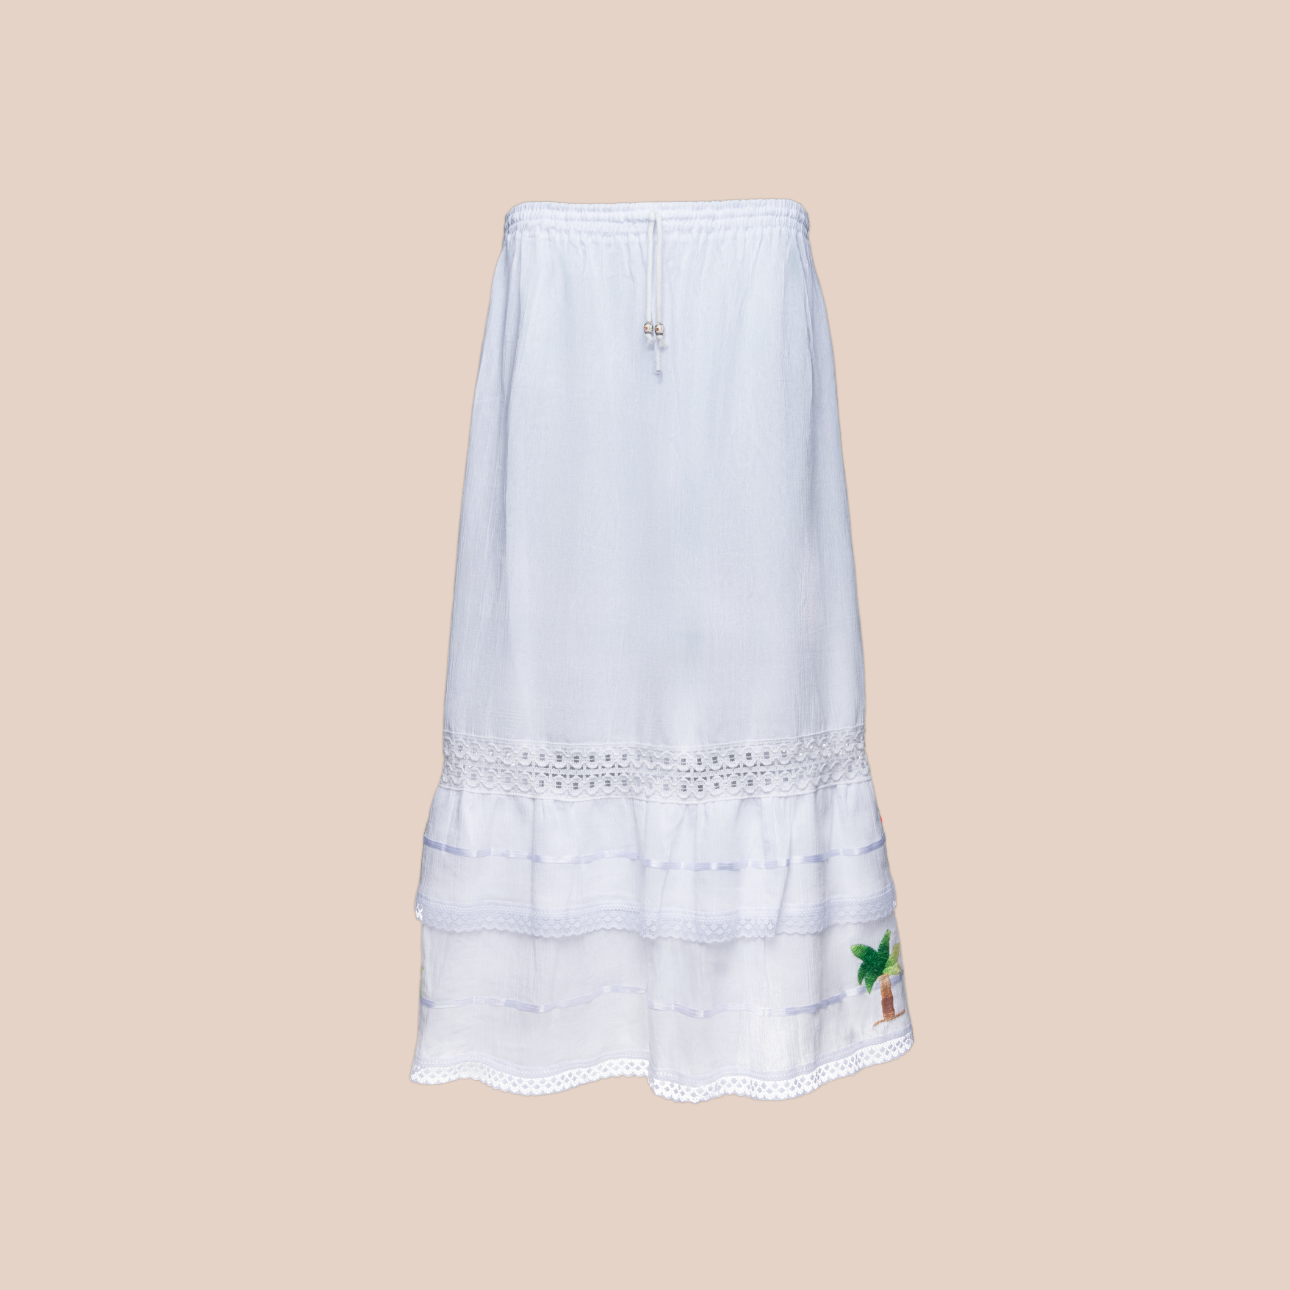 Image de la jupe chica palms , jupe tendance en coton et accrylique, broderie motif palmier